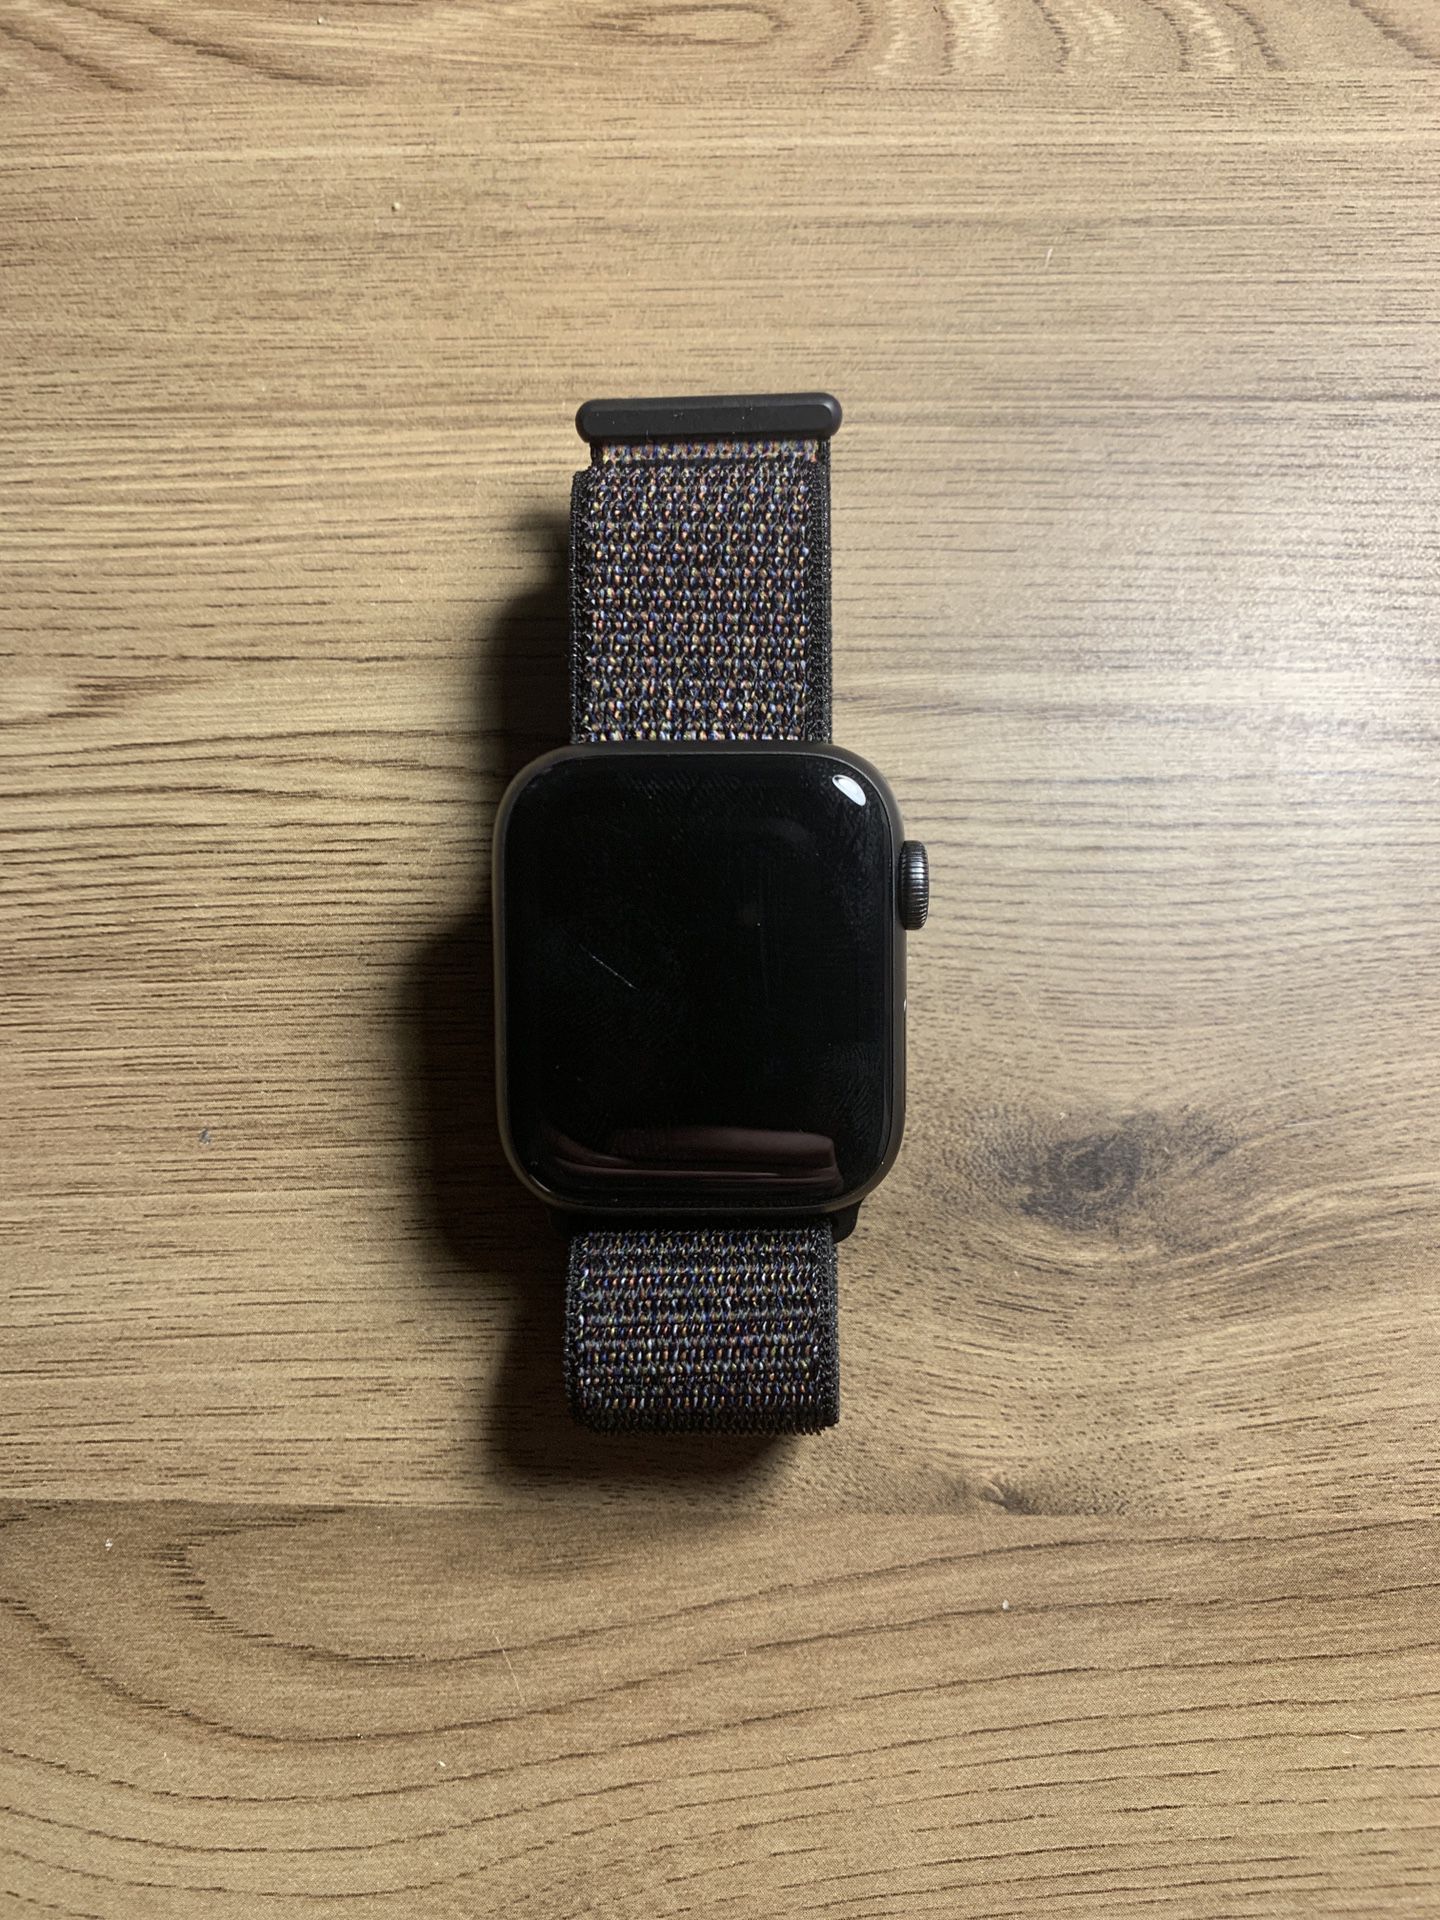 Apple Watch Series 4 Sport Loop Band GPS